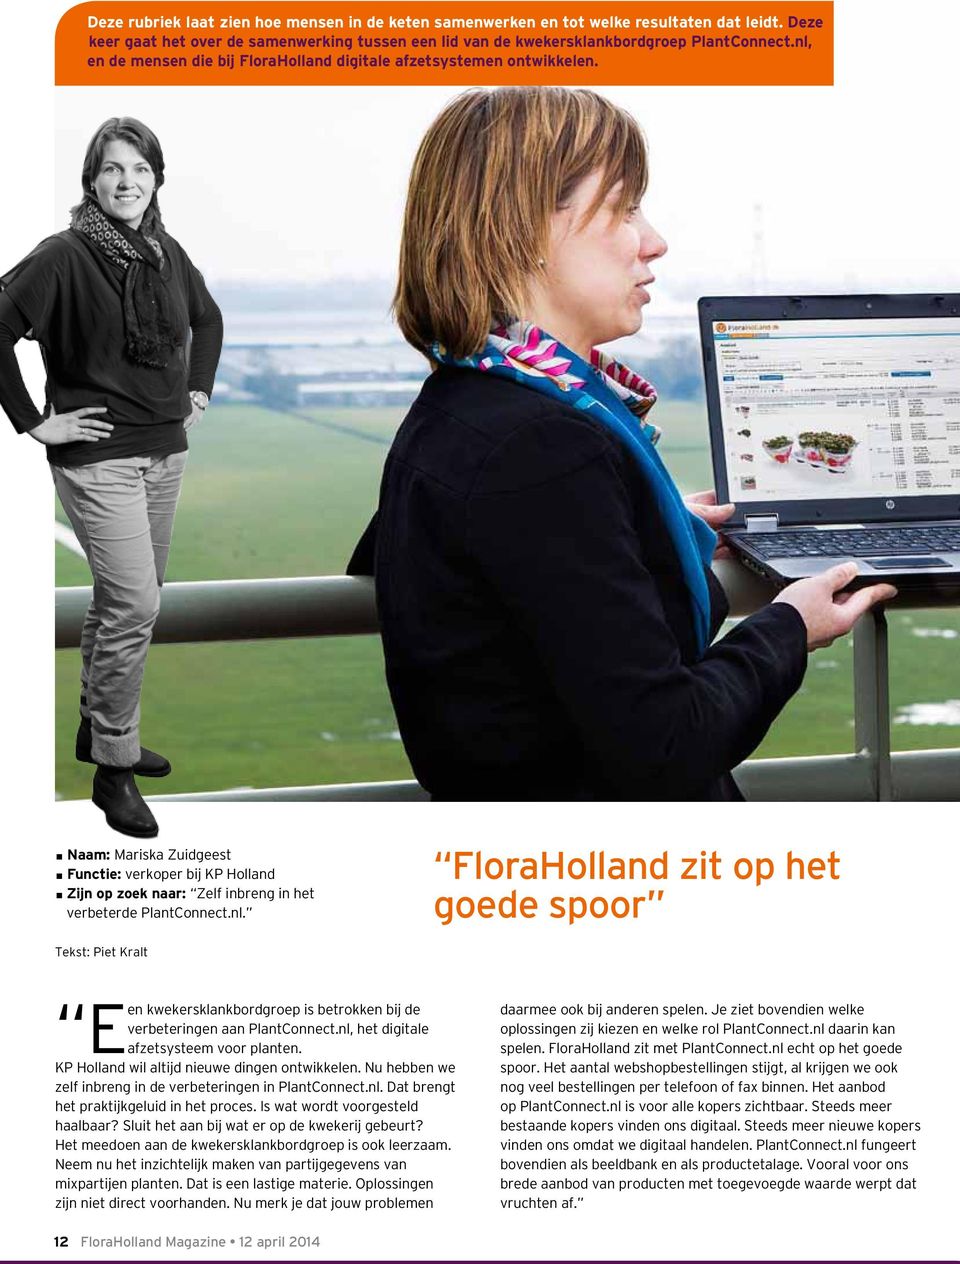 nl, het digitale Een afzetsysteem voor planten. KP Holland wil altijd nieuwe dingen ontwikkelen. Nu hebben we zelf inbreng in de verbeteringen in PlantConnect.nl. Dat brengt het praktijkgeluid in het proces.